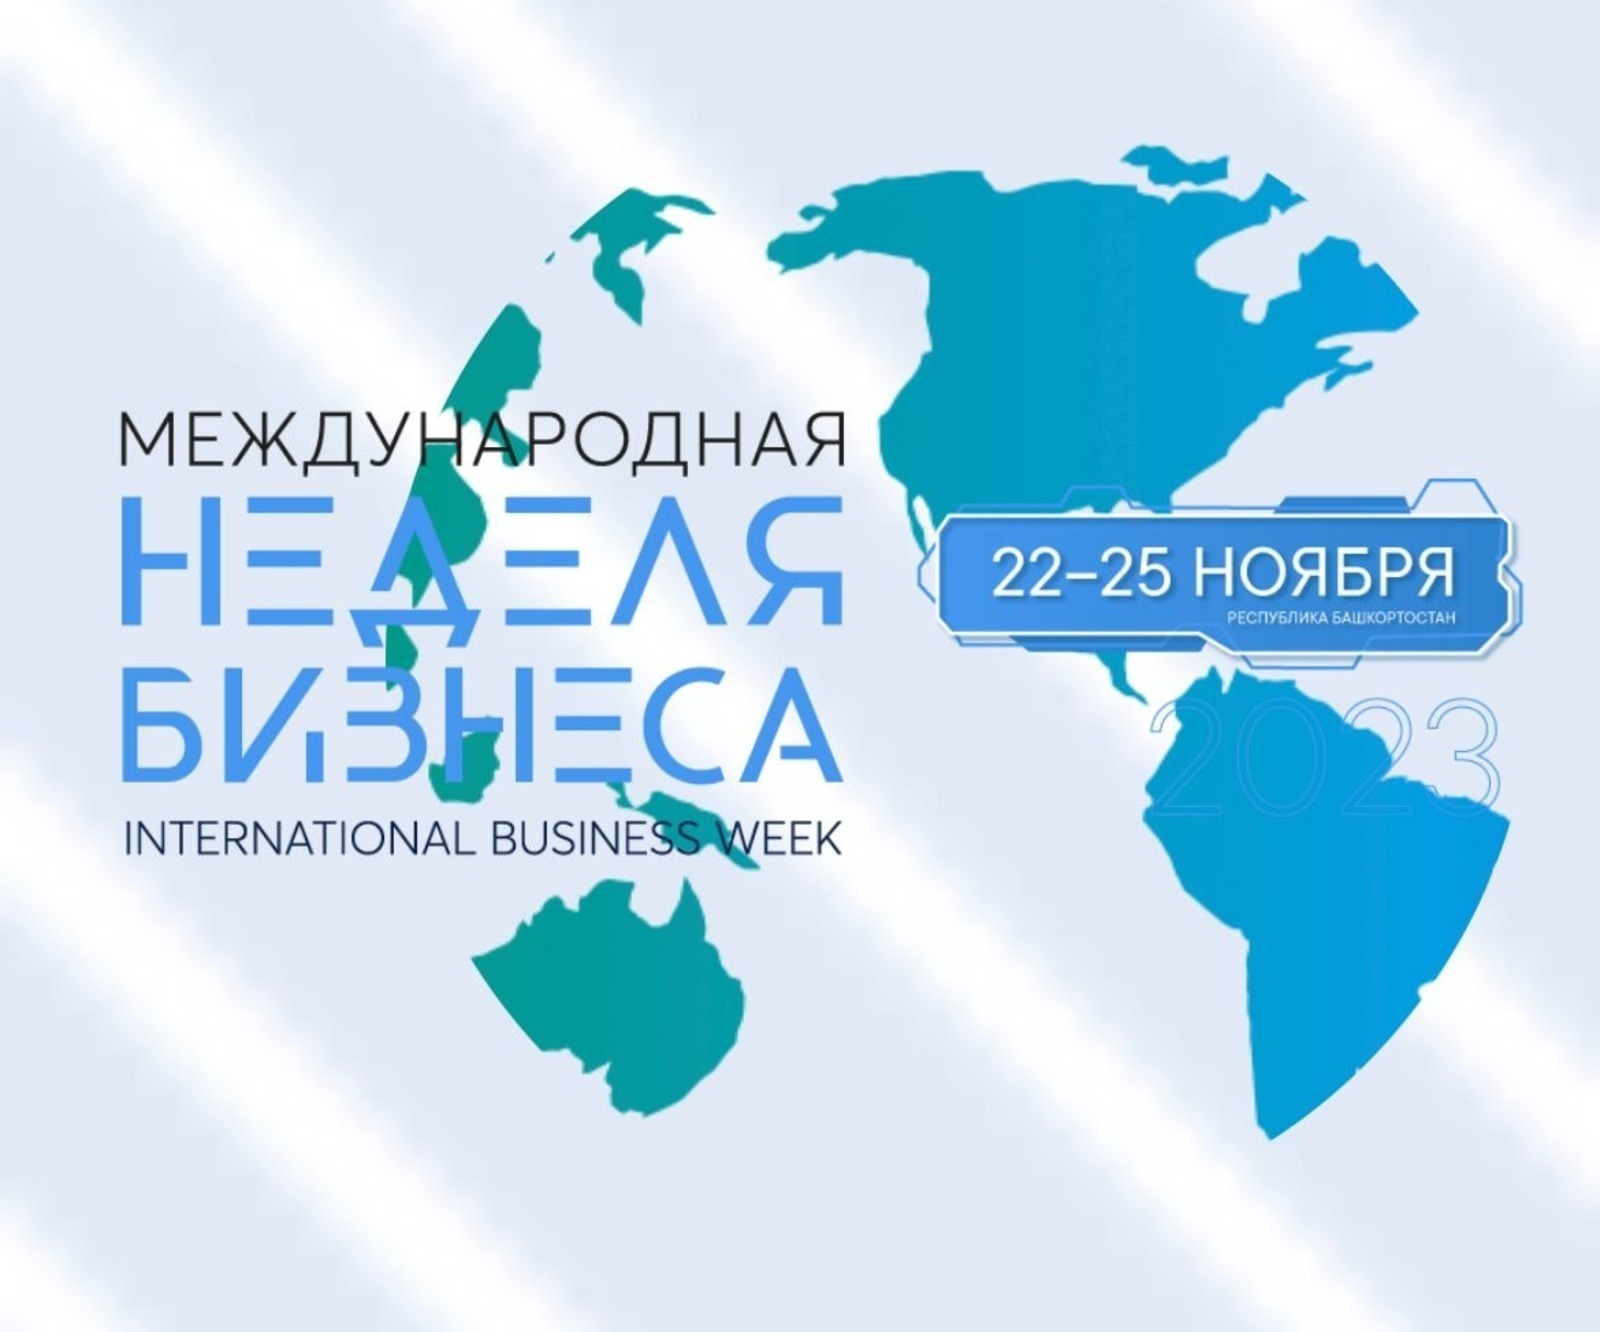 Мария Захарова рассказала о предстоящей Международной неделе бизнеса в Башкирии